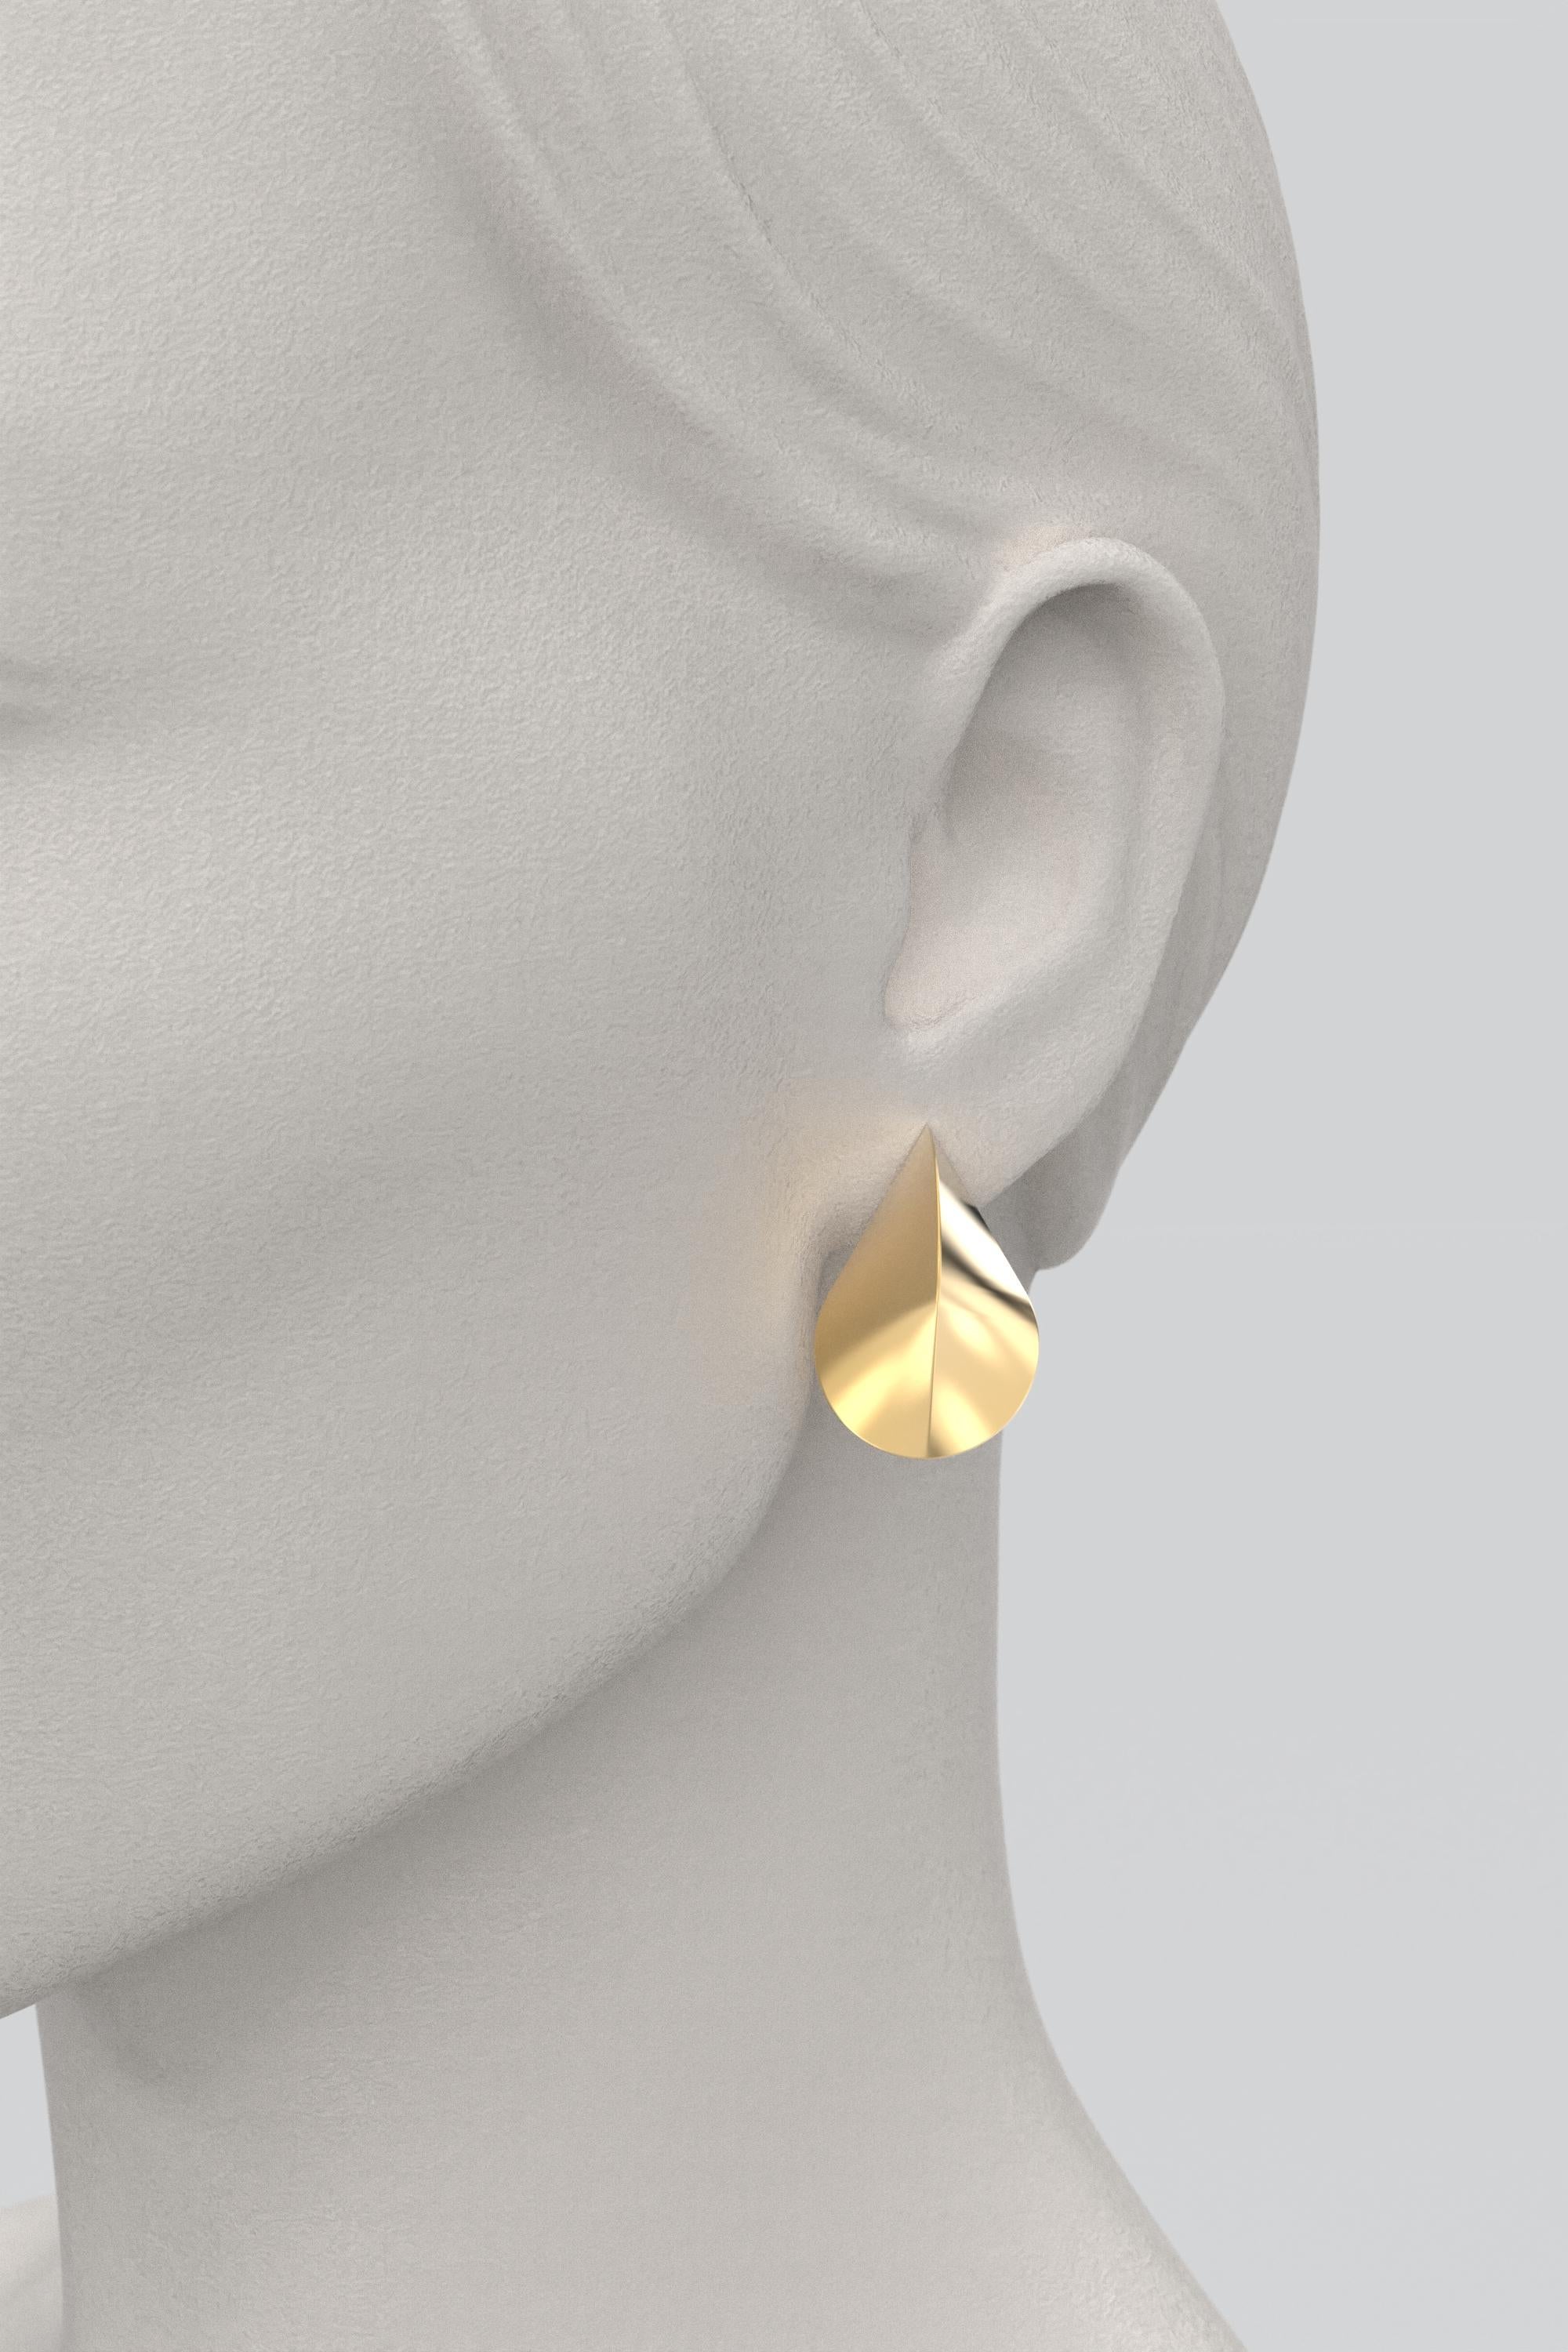 Italian 14k Gold Earrings, Modern Elegant Earrings by Oltremare Gioielli For Sale 1